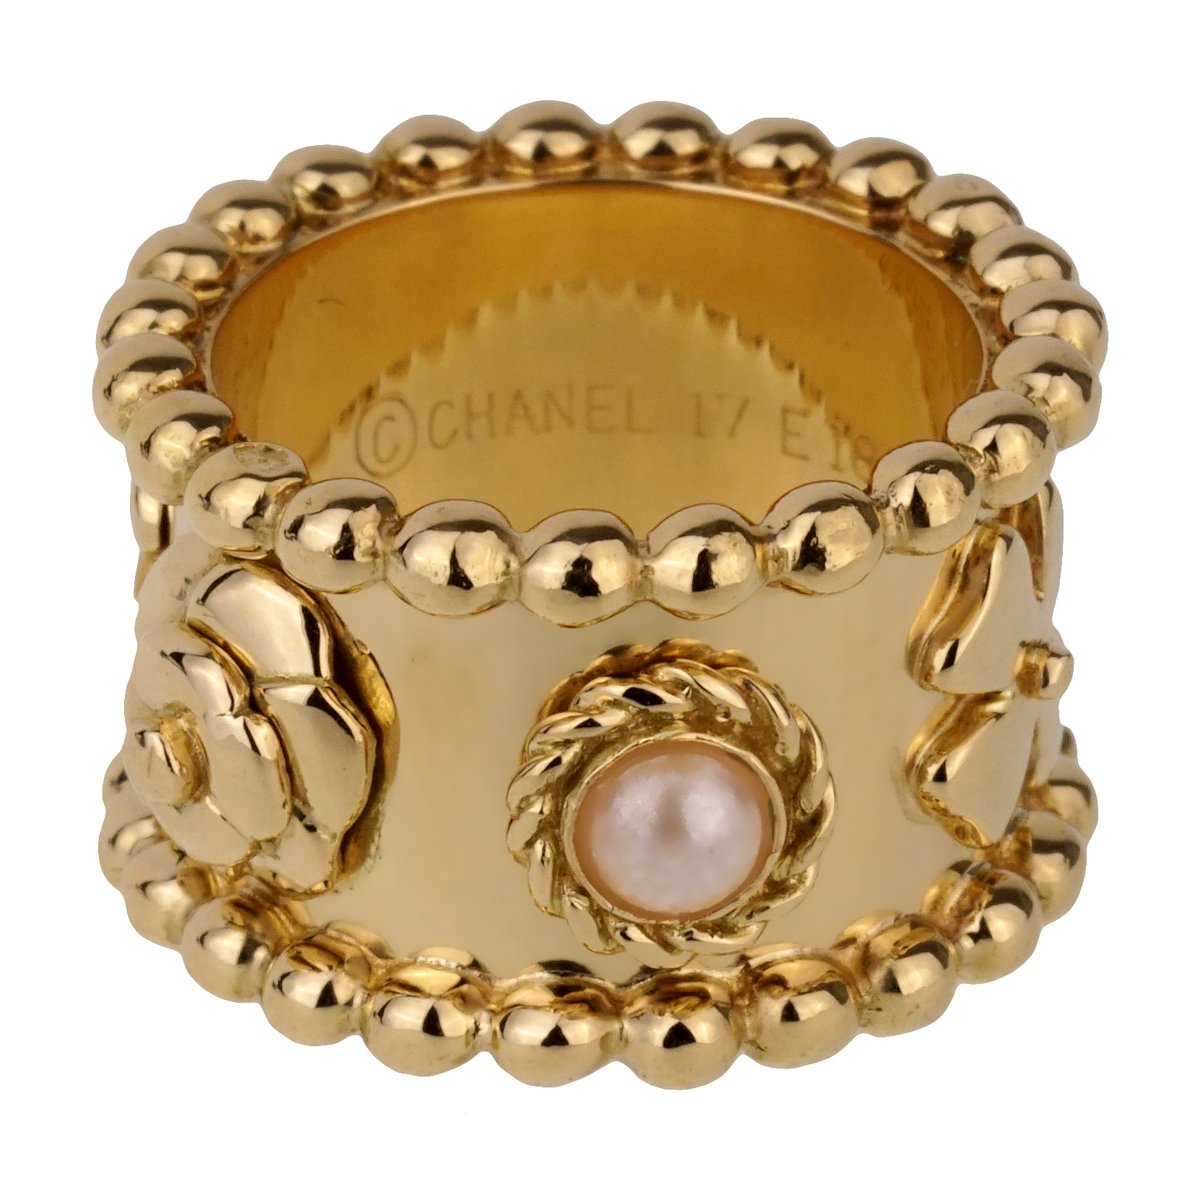 Chanel jewelry - GIGI PARIS